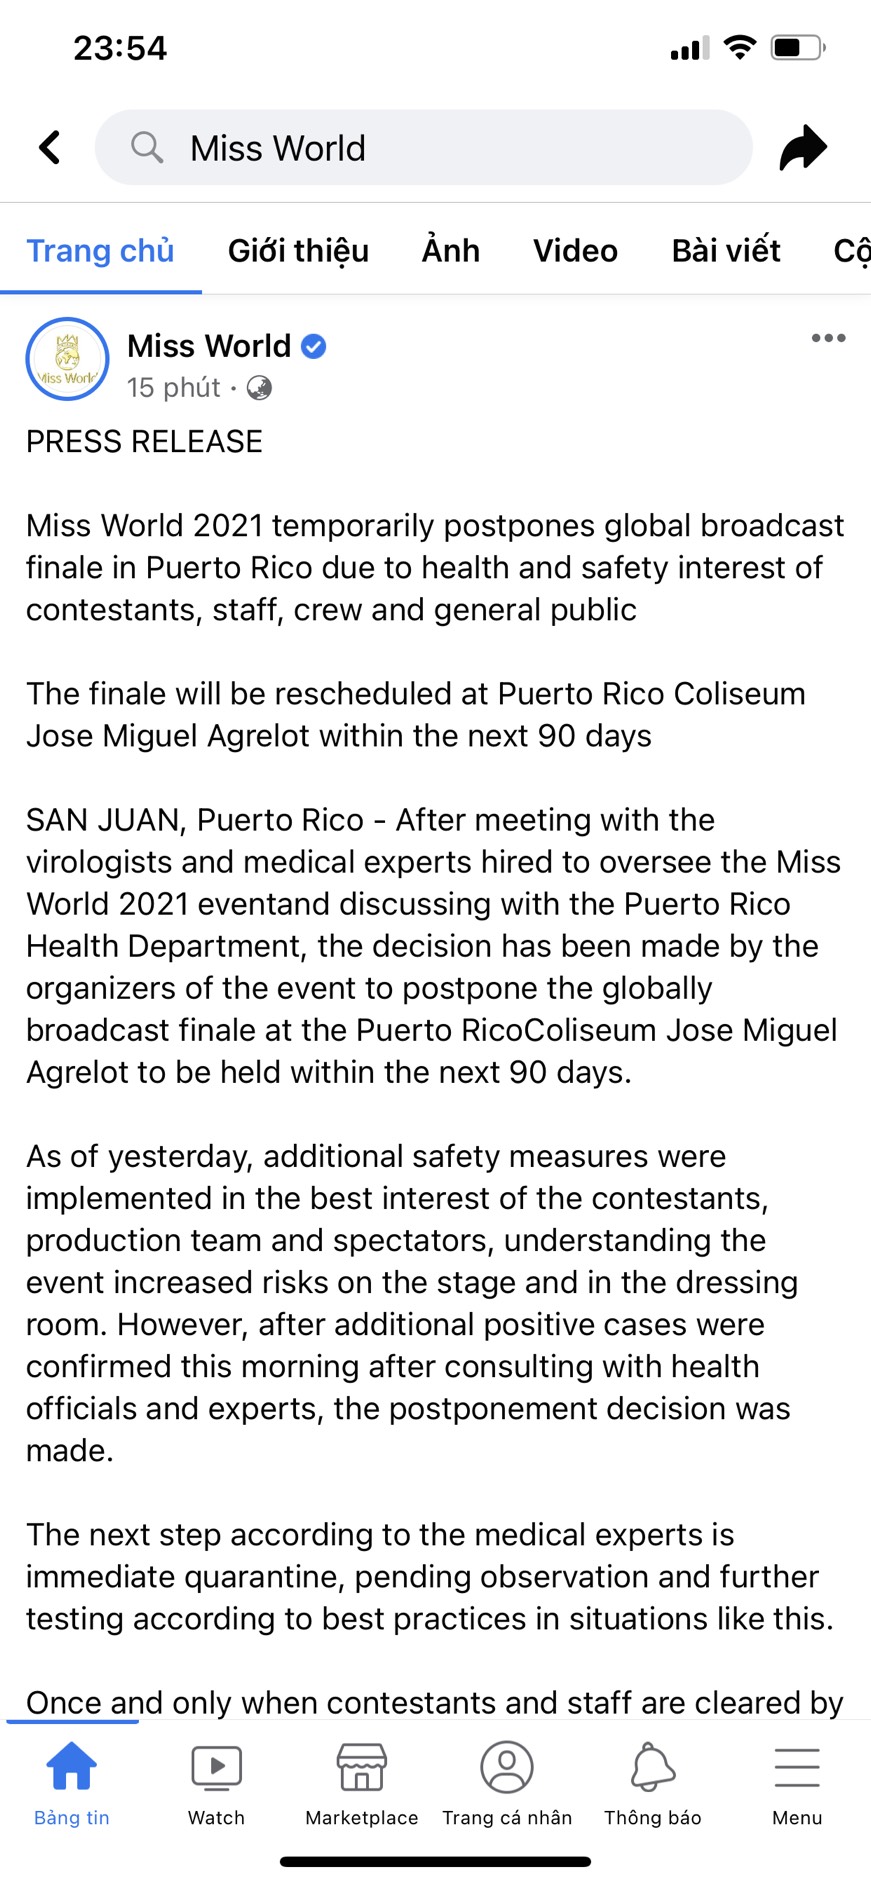 Bài viết mà ban tổ chức Miss World thông báo tạm hoãn Chung kết ngay trước giờ G